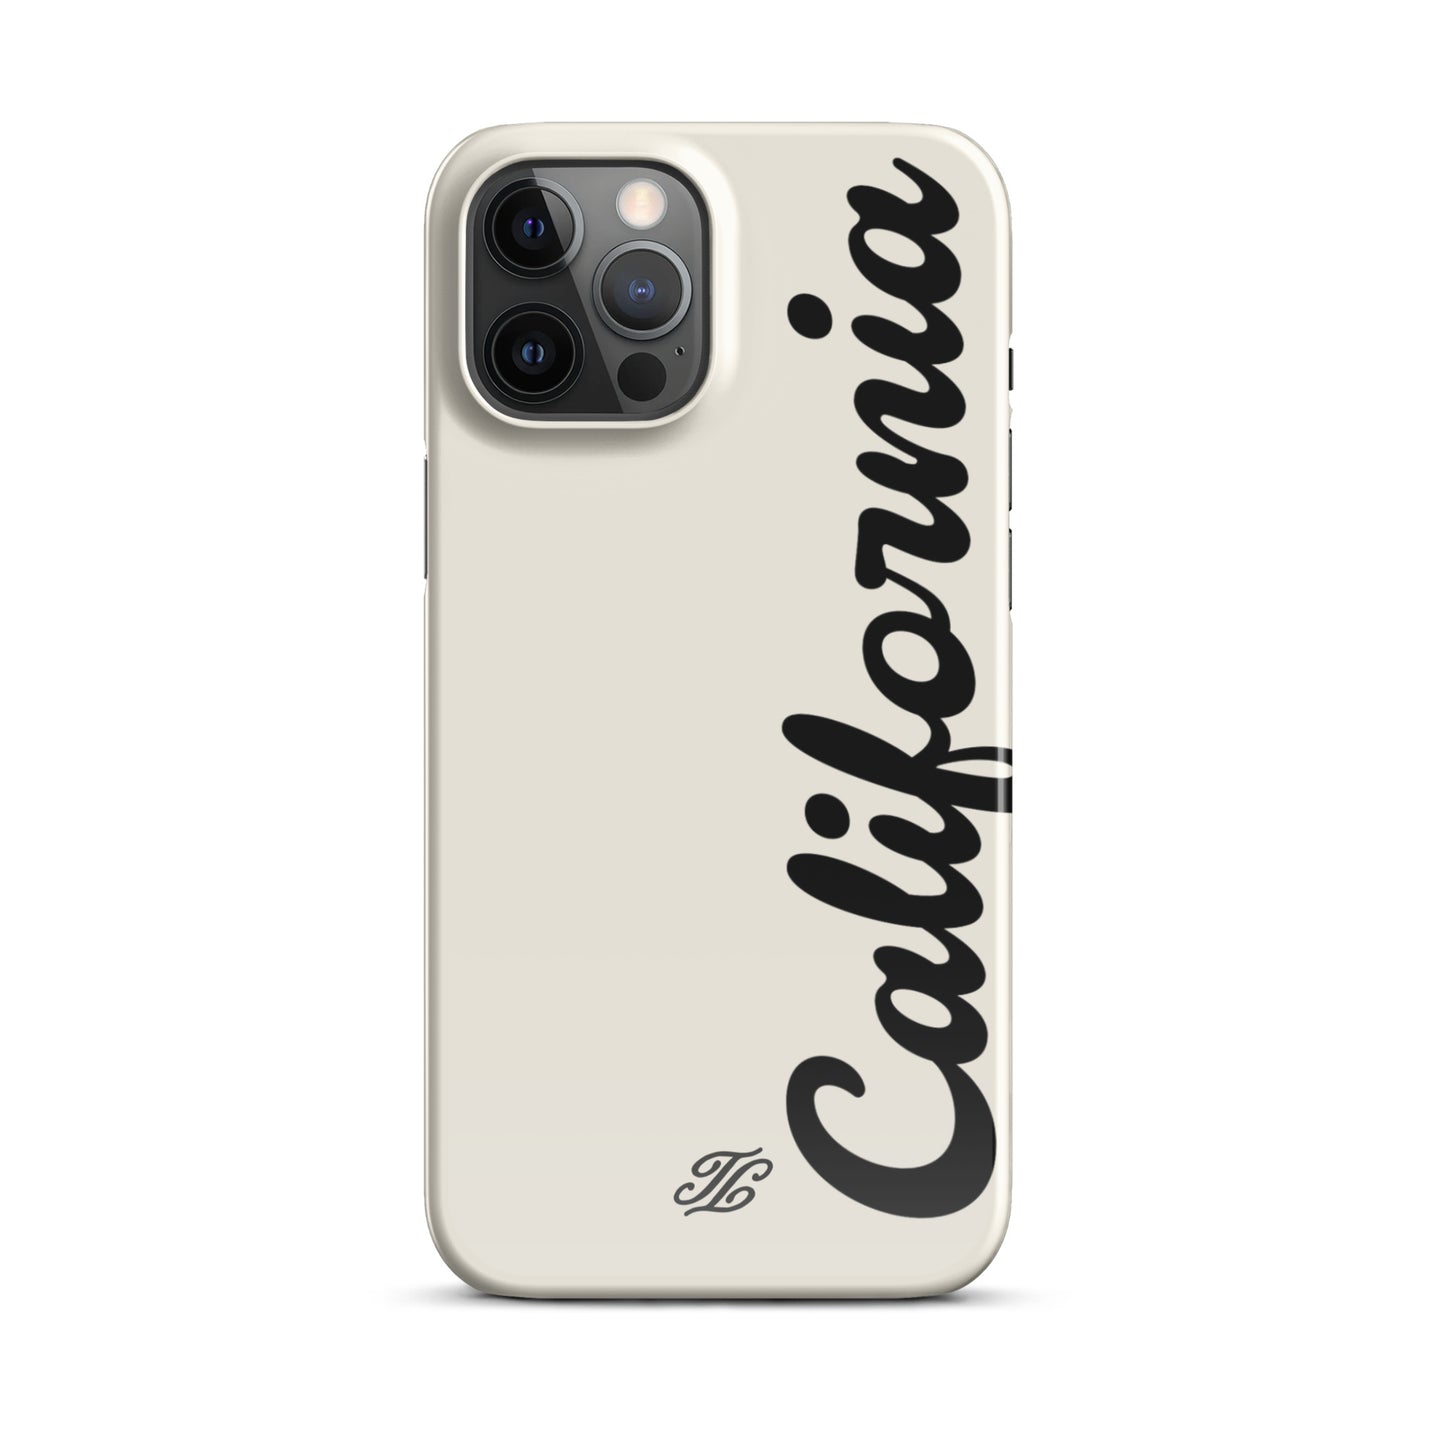 California iPhone® case